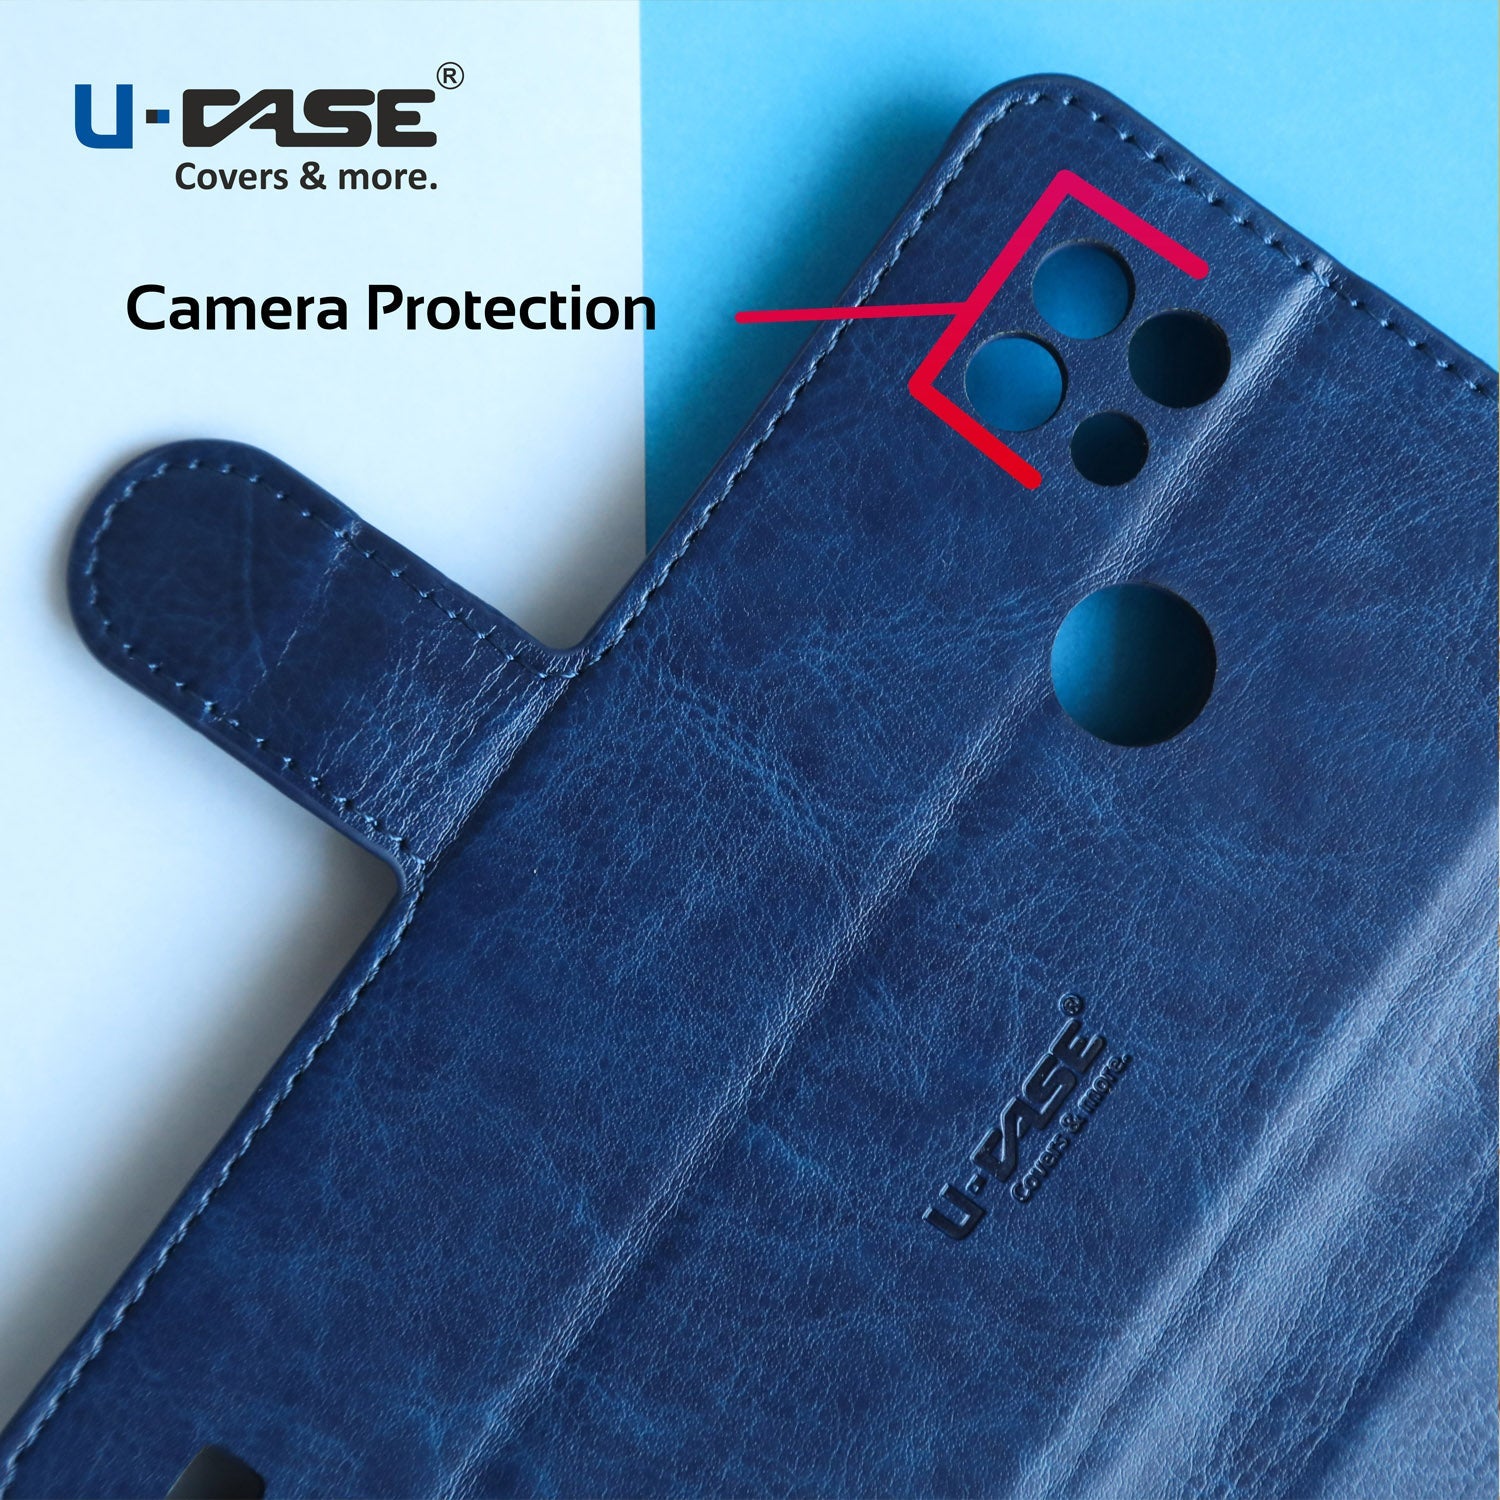 U-CASE Flip Cover for Realme C12, Realme Narzo 20, Realme Narzo 30A, Realme C25, Realme C25s Foldable Stand & Pocket Magnetic Closure camera